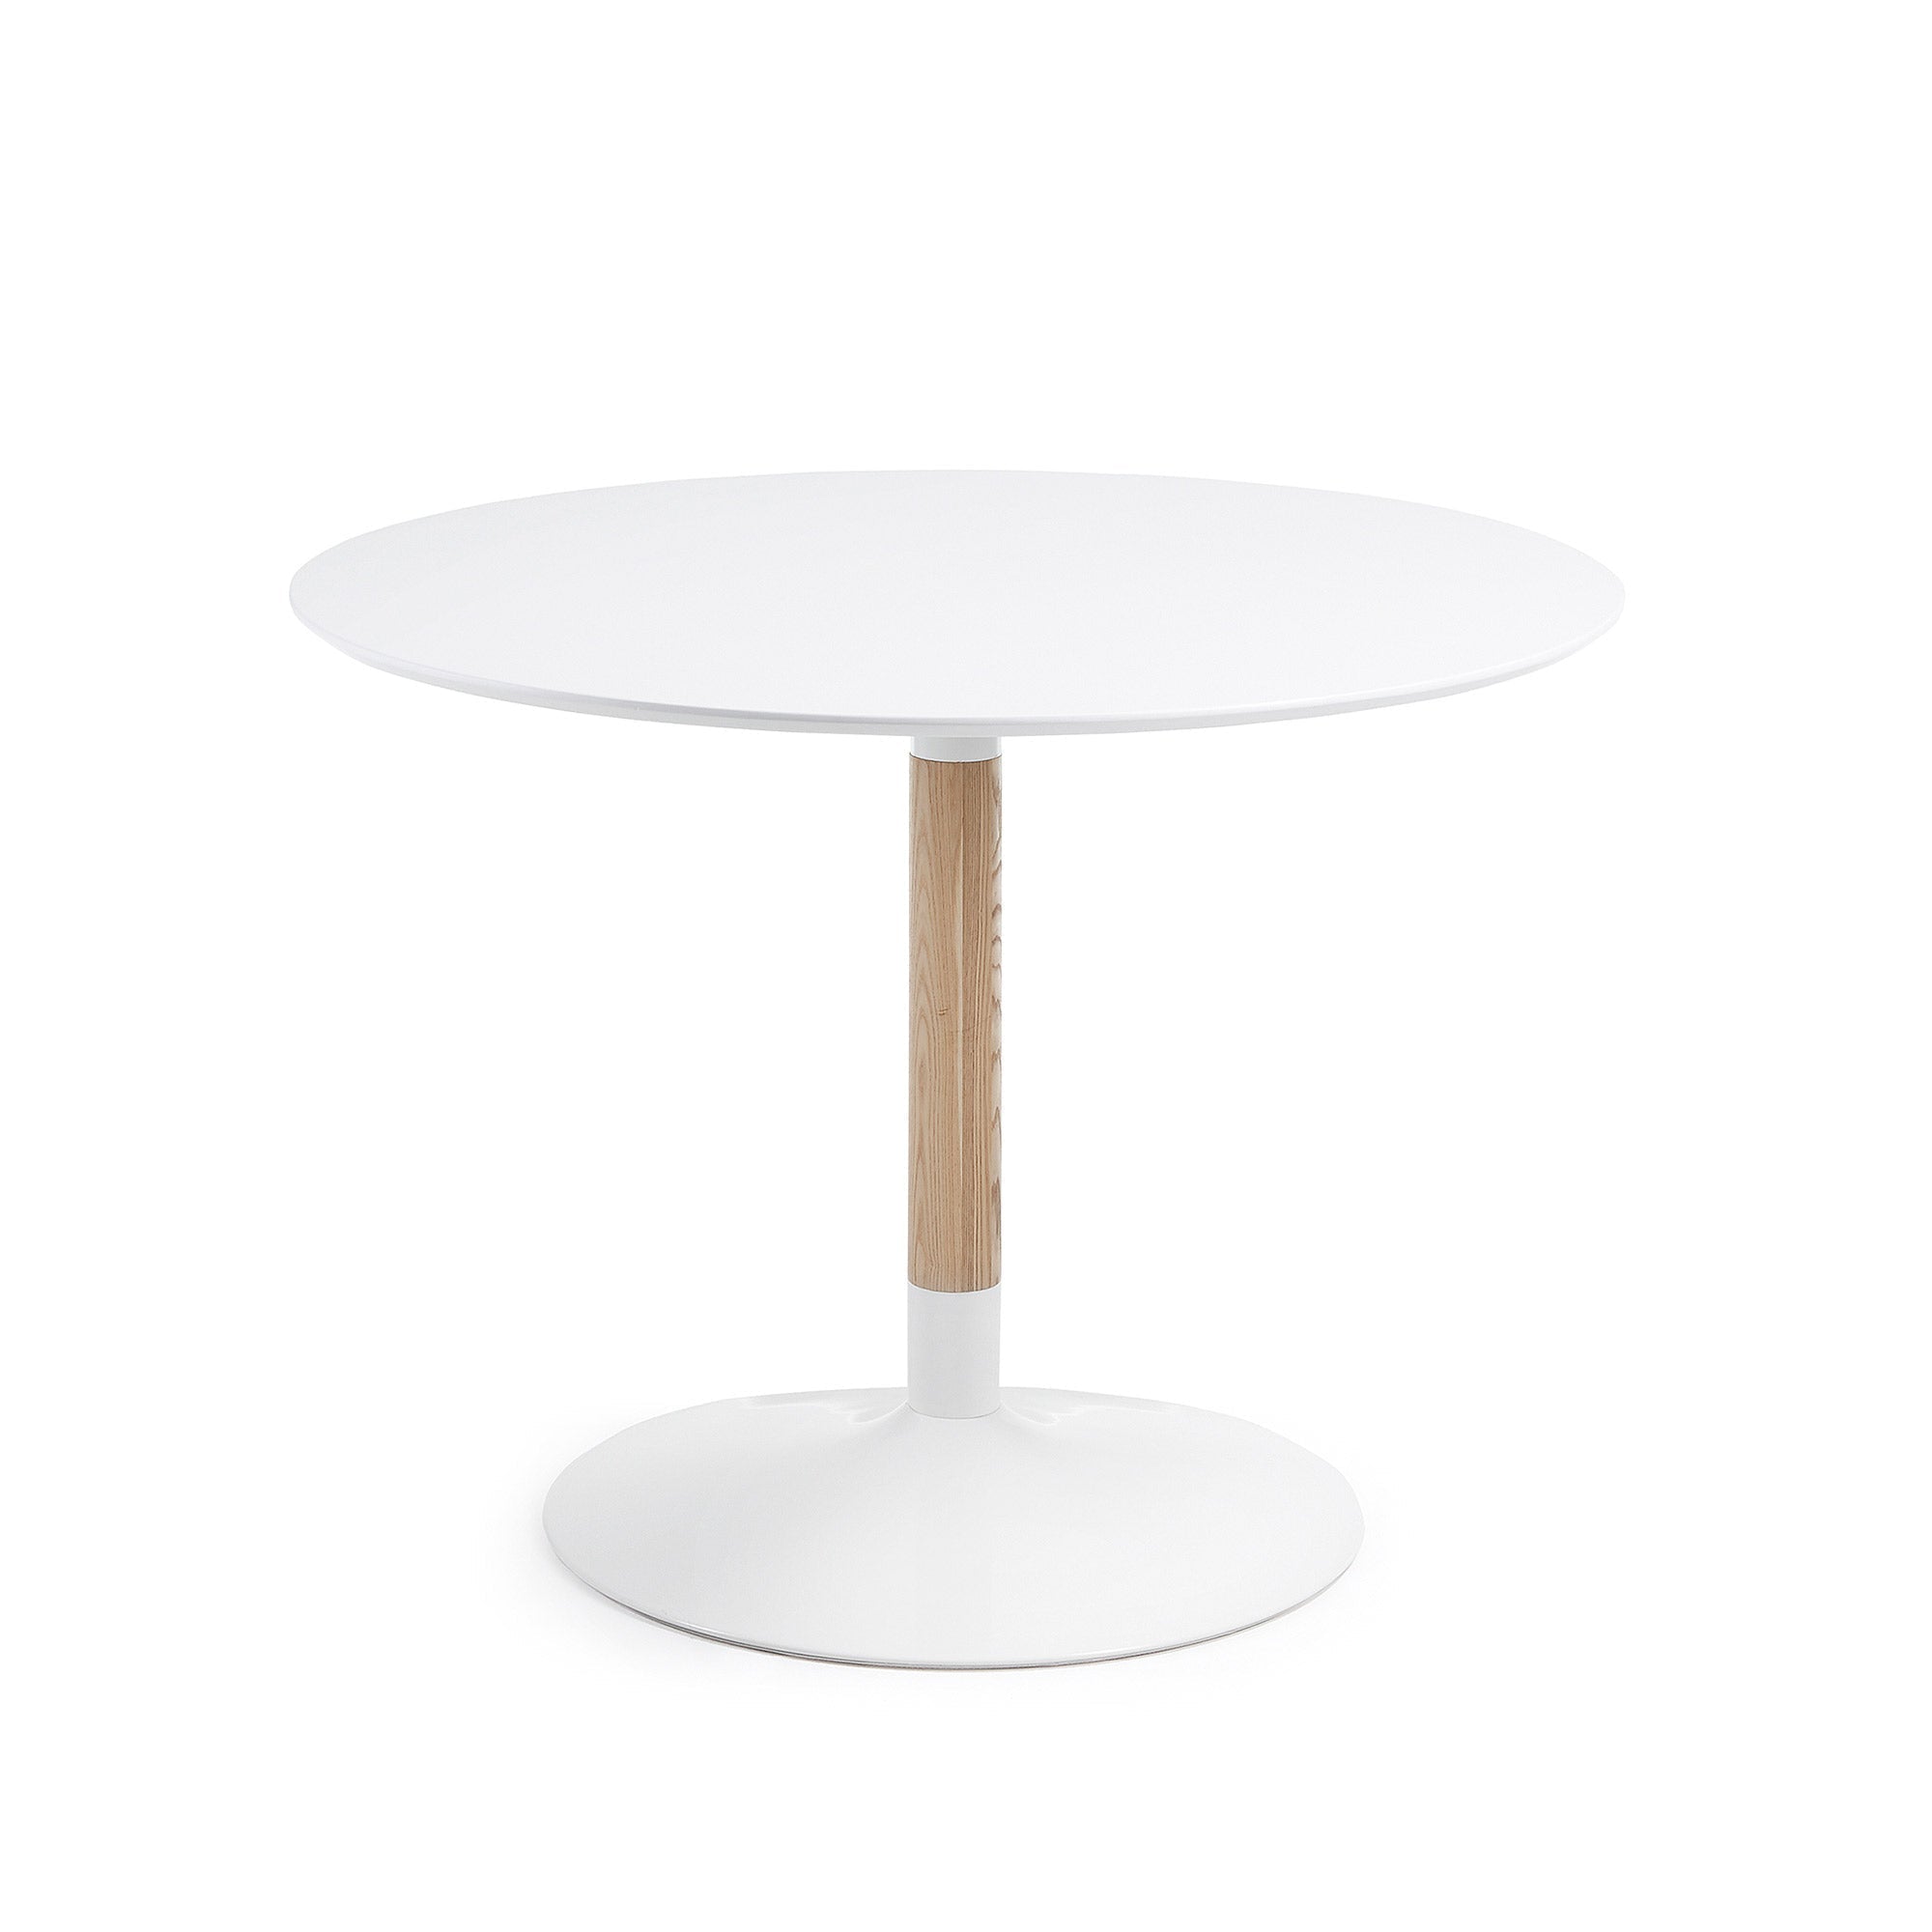 Kave Home Trick runder Tisch aus massiver Esche Weiß-110 x 110 x 75 cm-CC0092L05 #CC0092L05